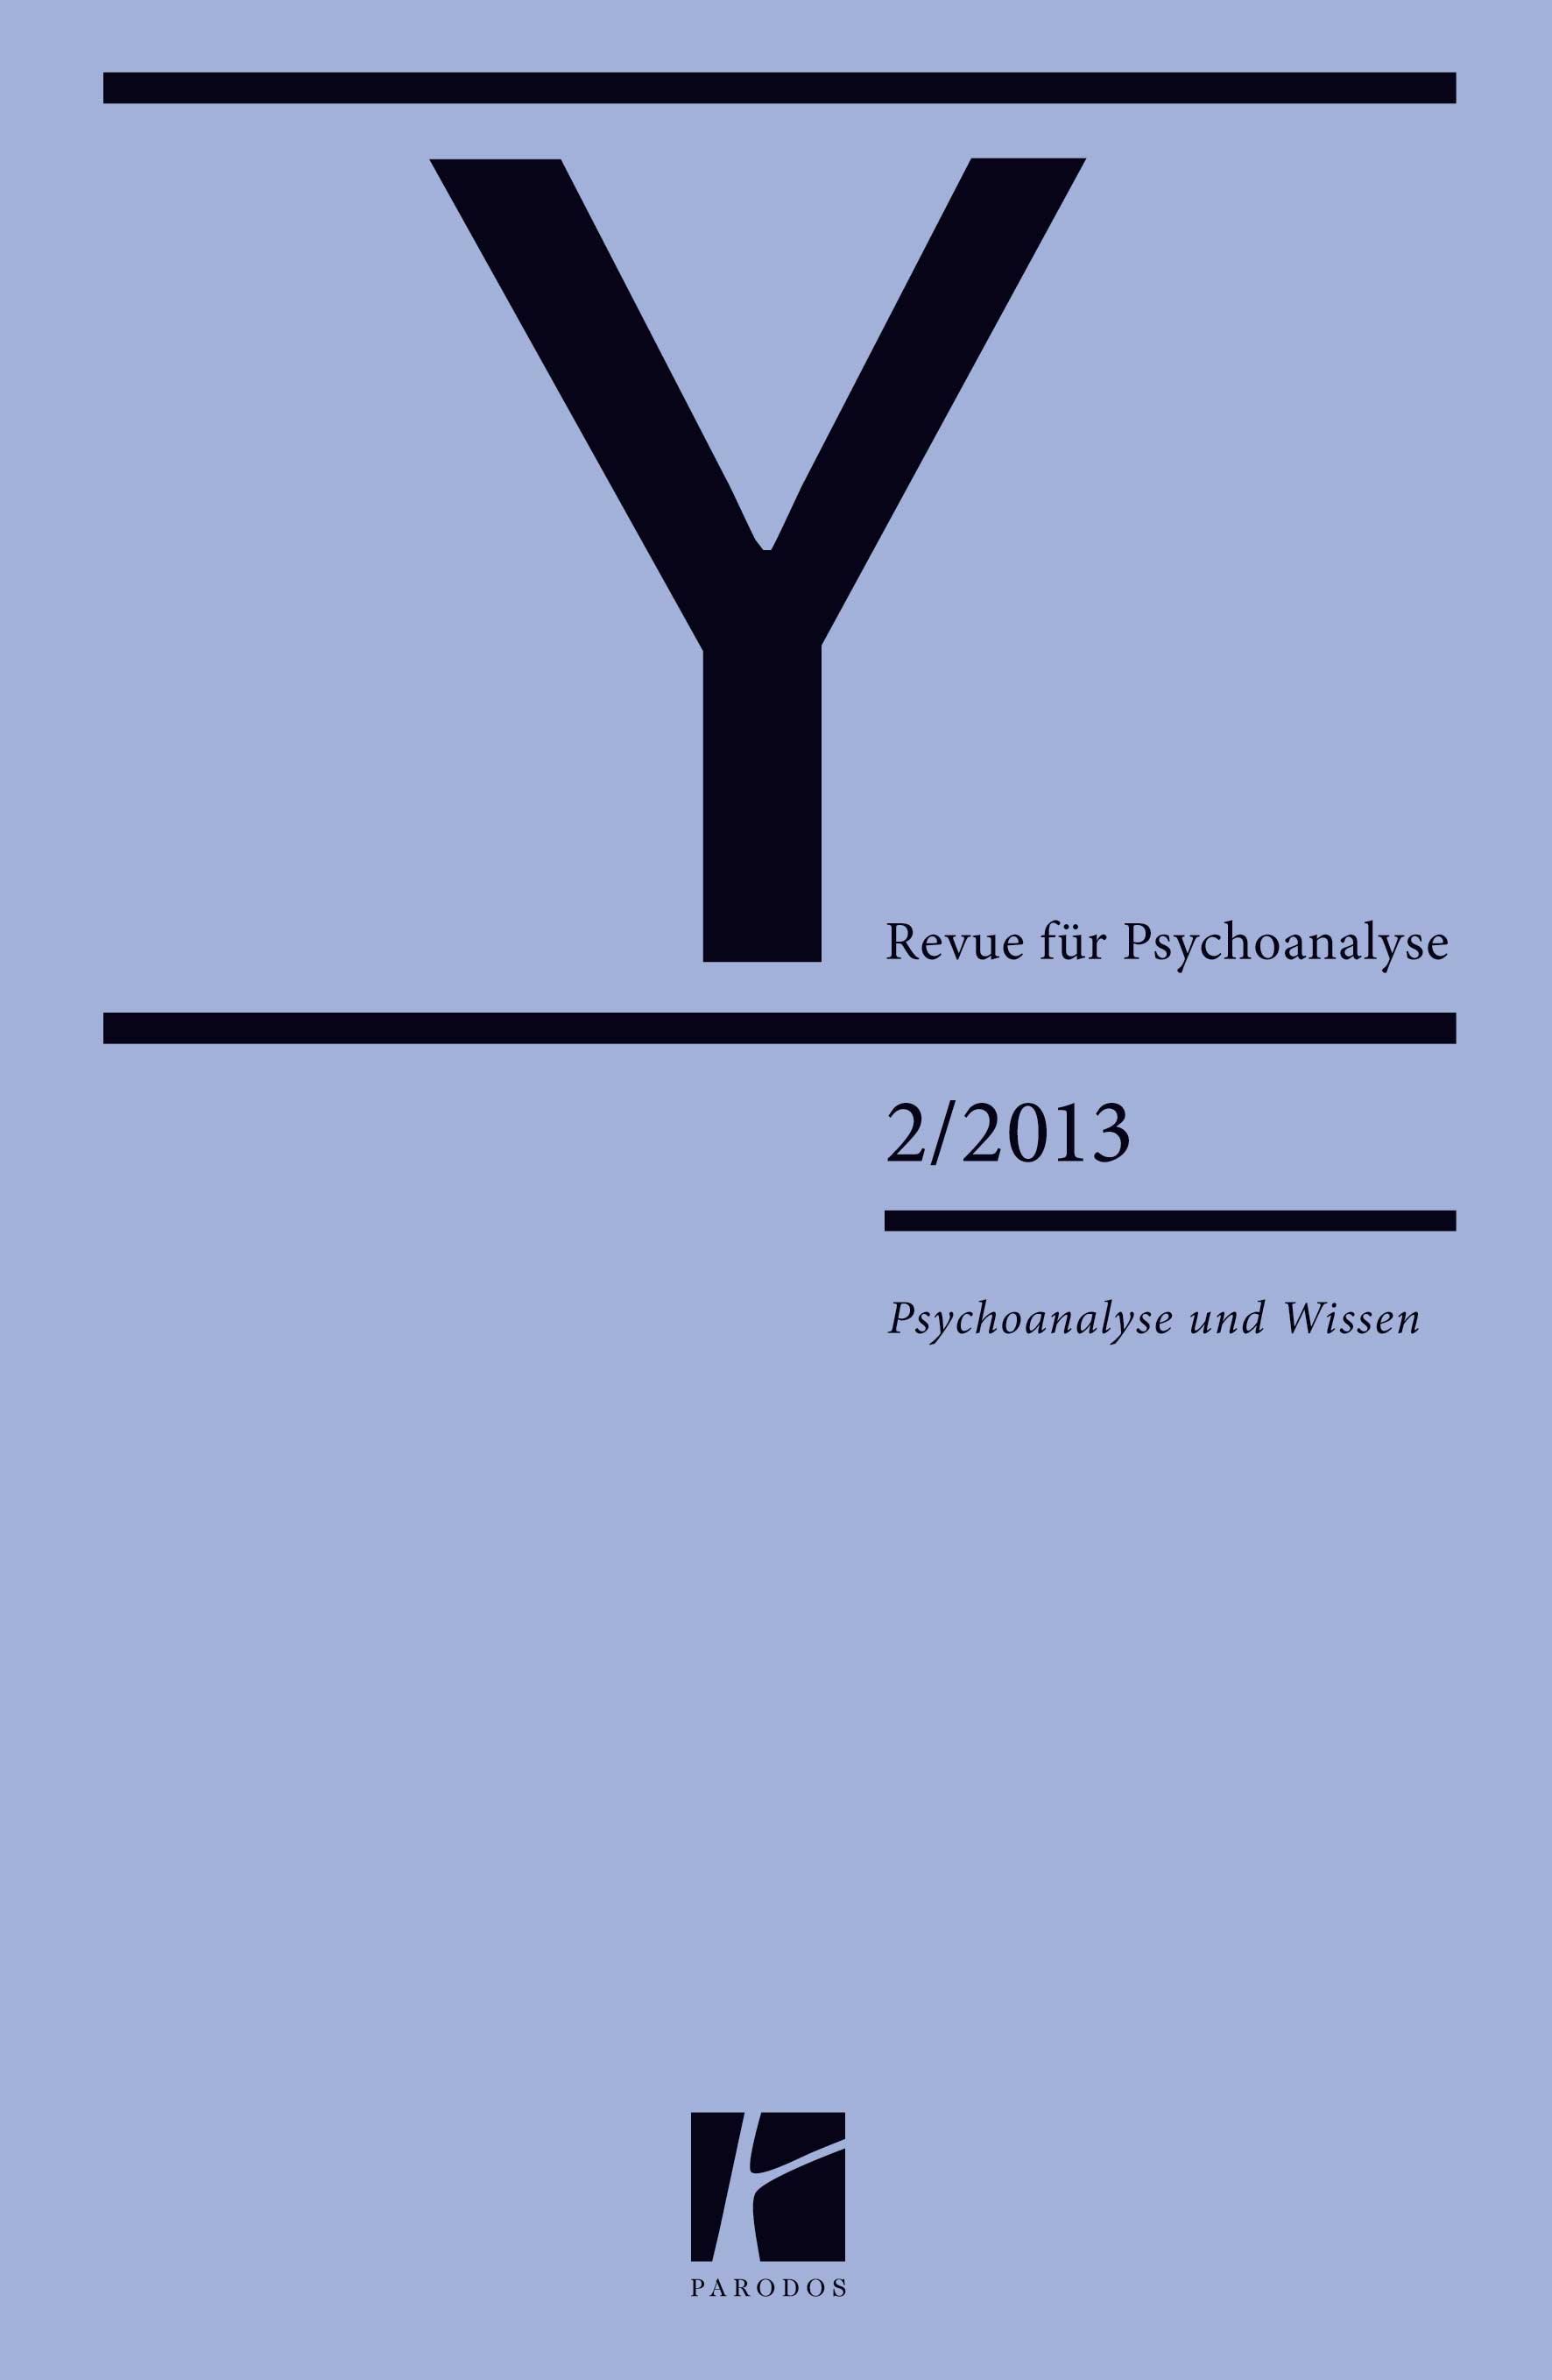 Kopie von Y – Revue für Psychoanalyse